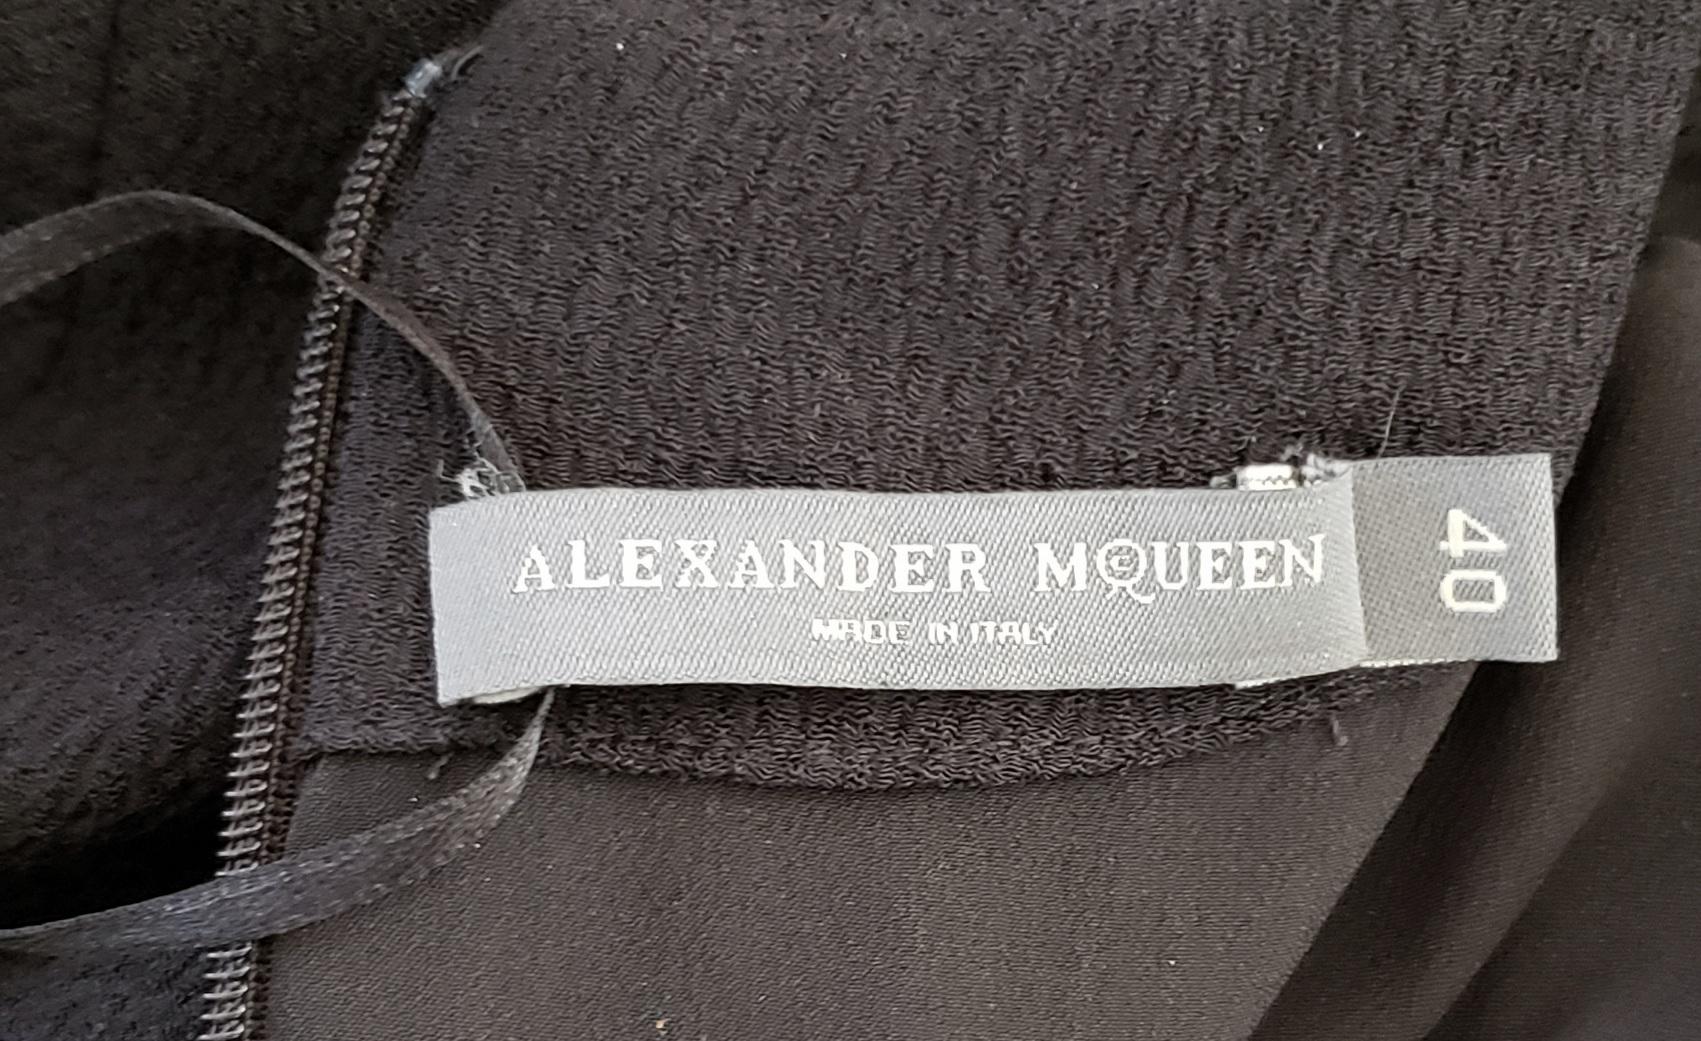 ALEXANDER McQueen BLACK SILK LONG EVENING DRESS size 40 - 4 1